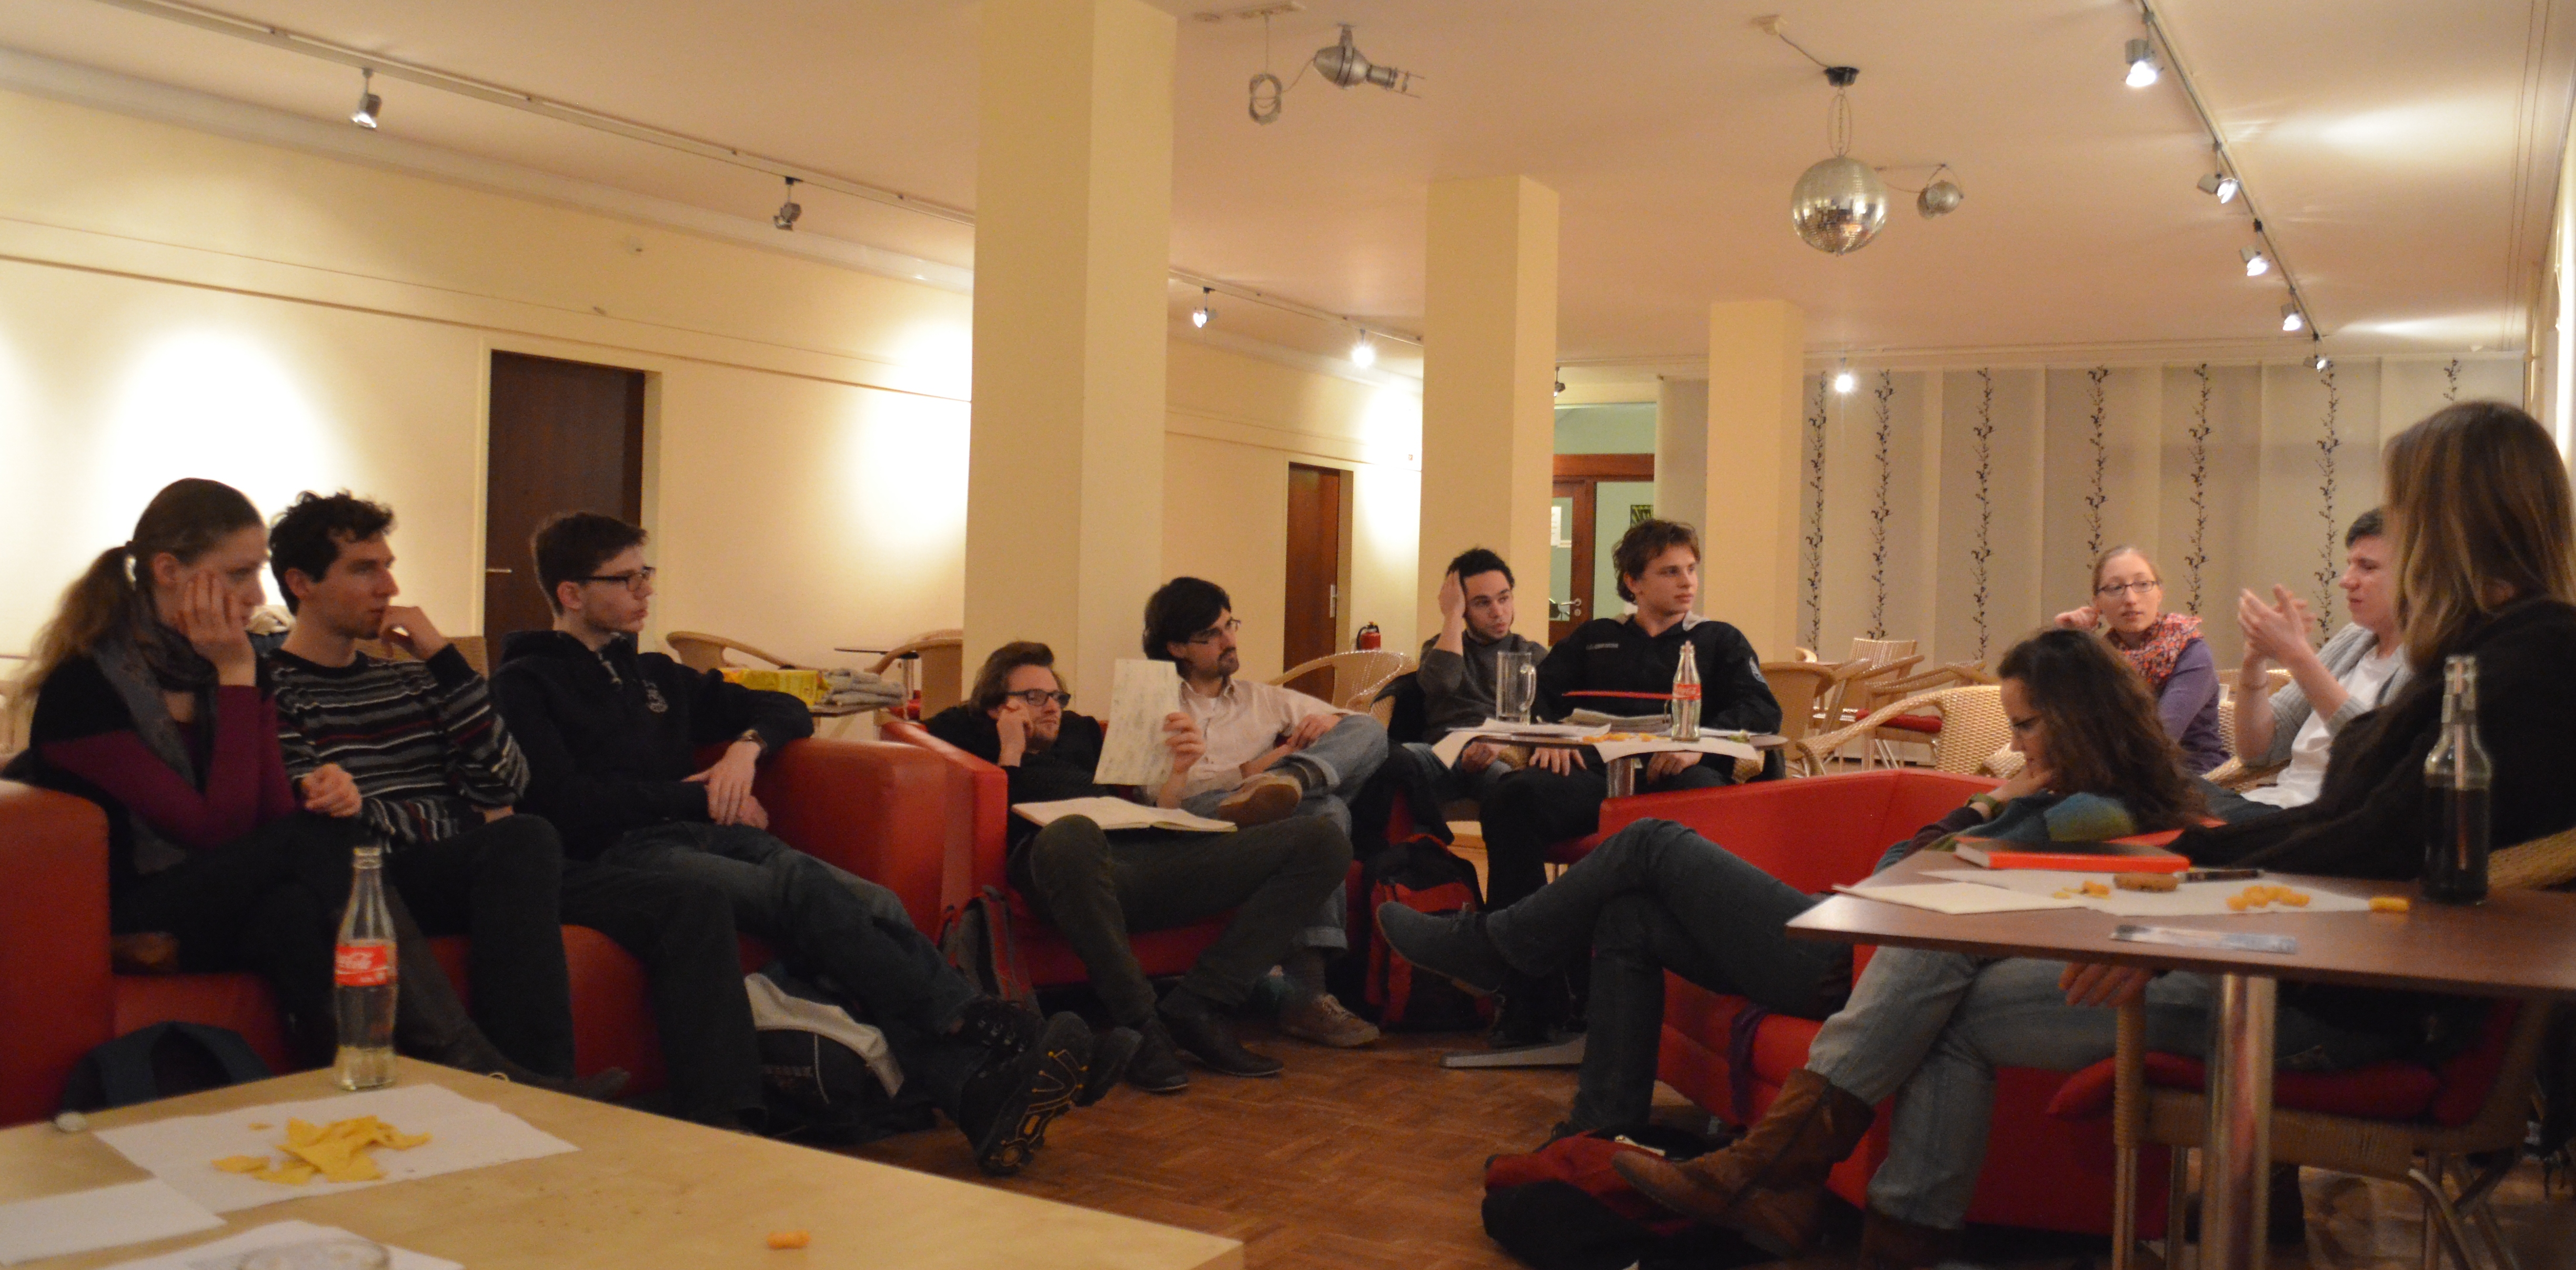 Mehrere Studierende sitzen auf Sofas in einem Kreis und diskutieren intensiv über etwas.